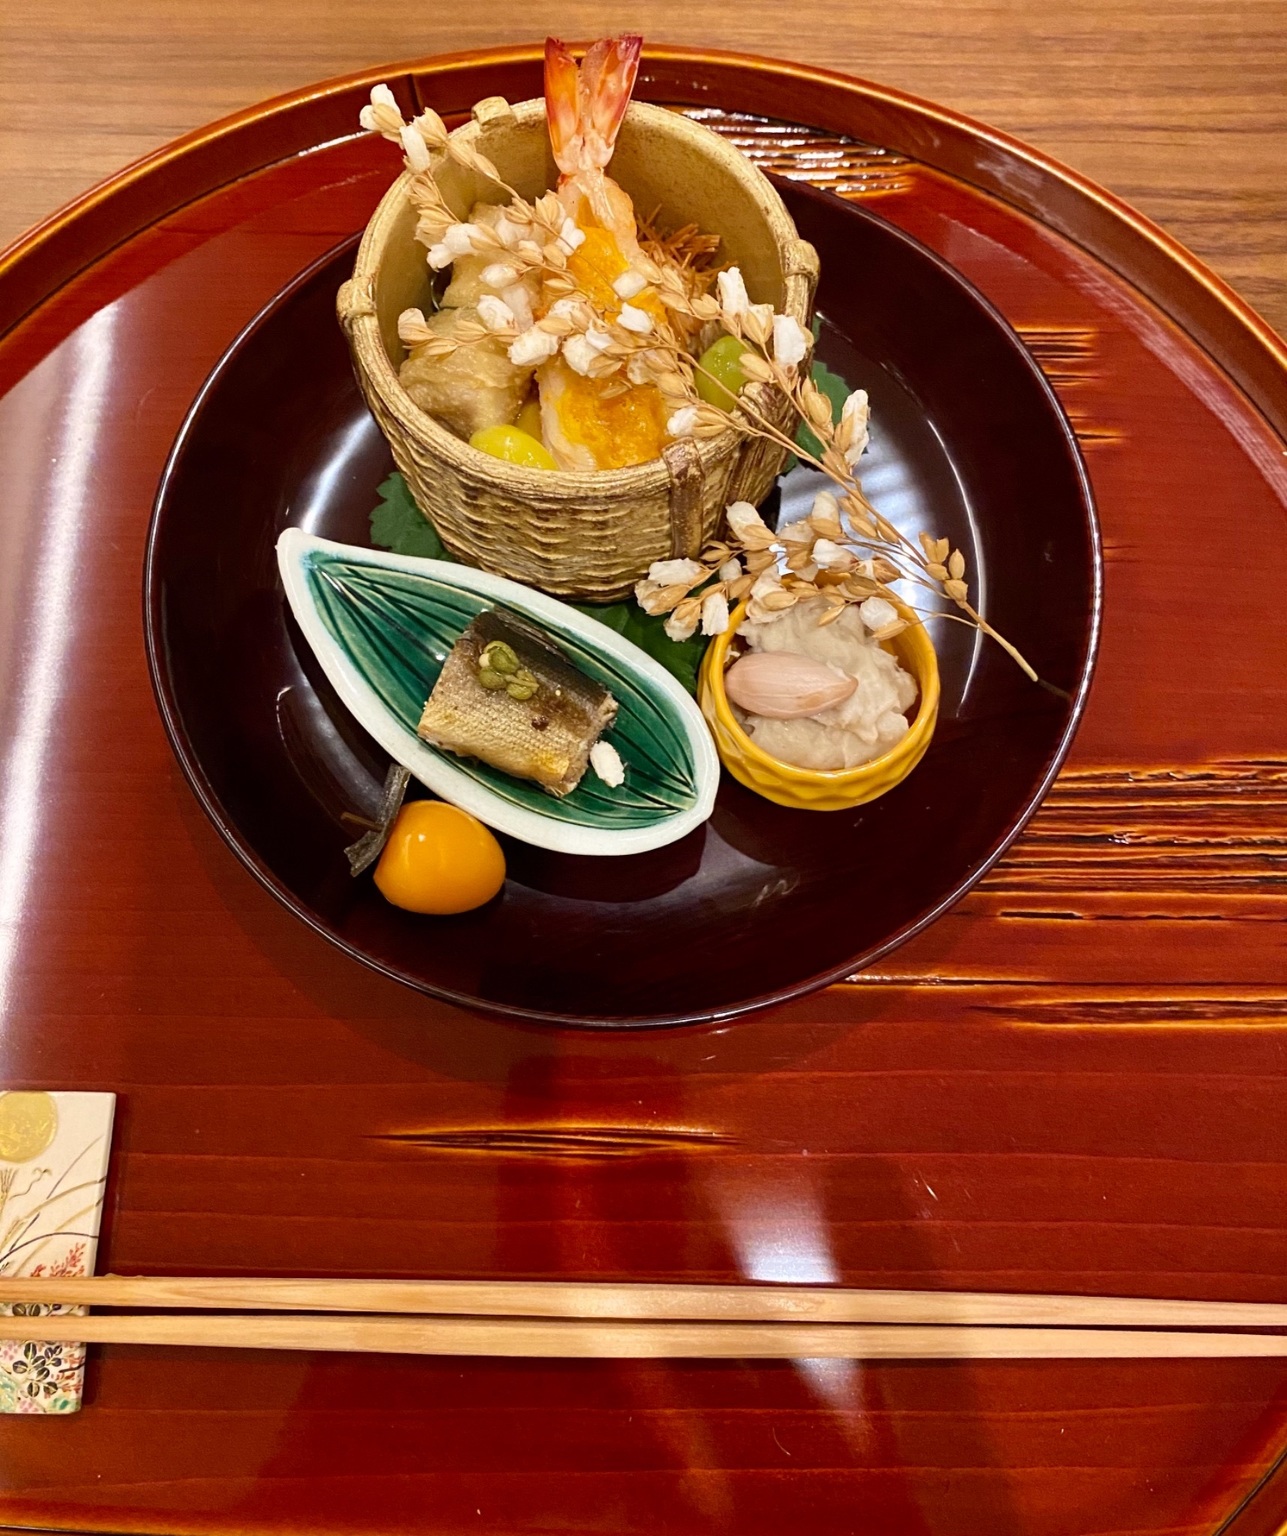 小室 懐石 名店『懐石 小室』小室光博氏による日本料理とホスピタリティが、深く心に響くワケ